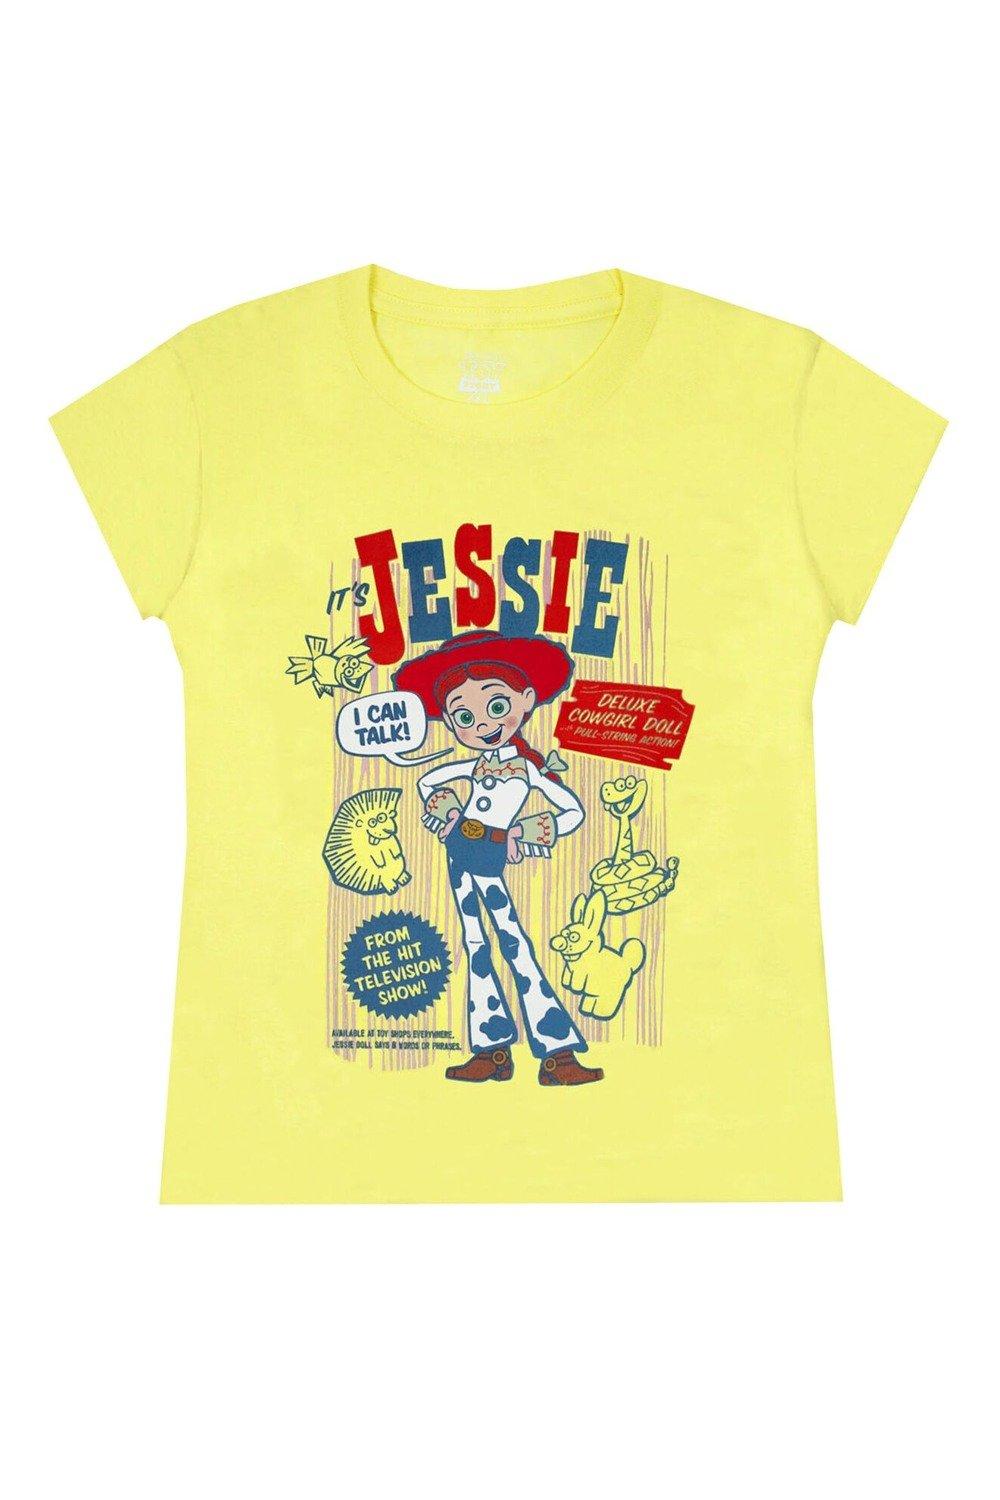 Jessie T-Shirt